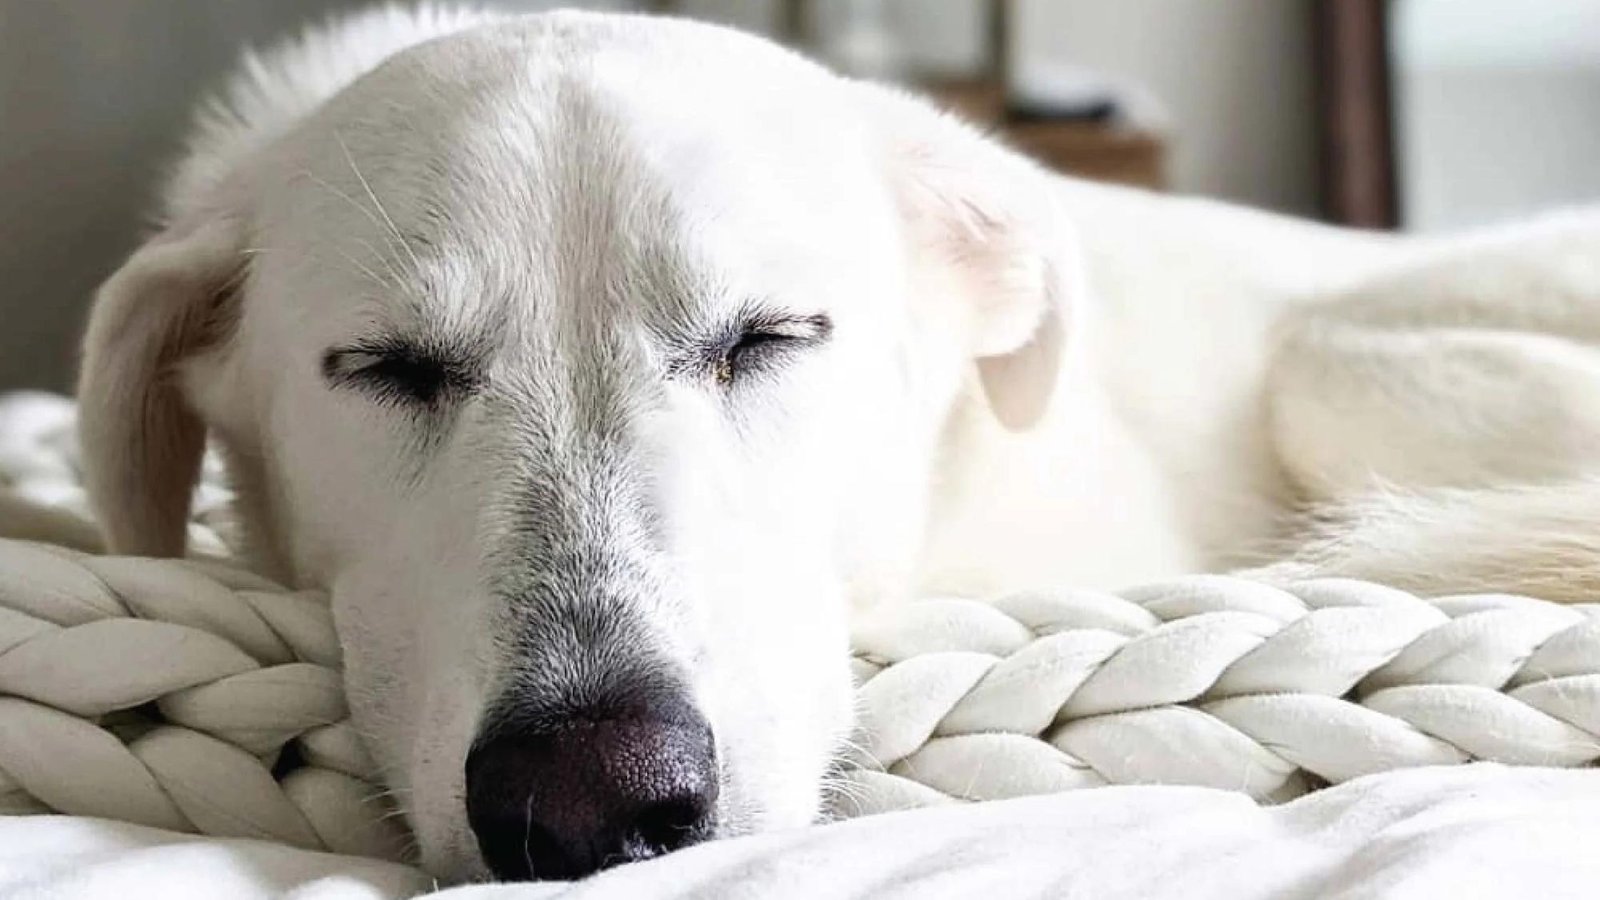 why do dogs sleep so much